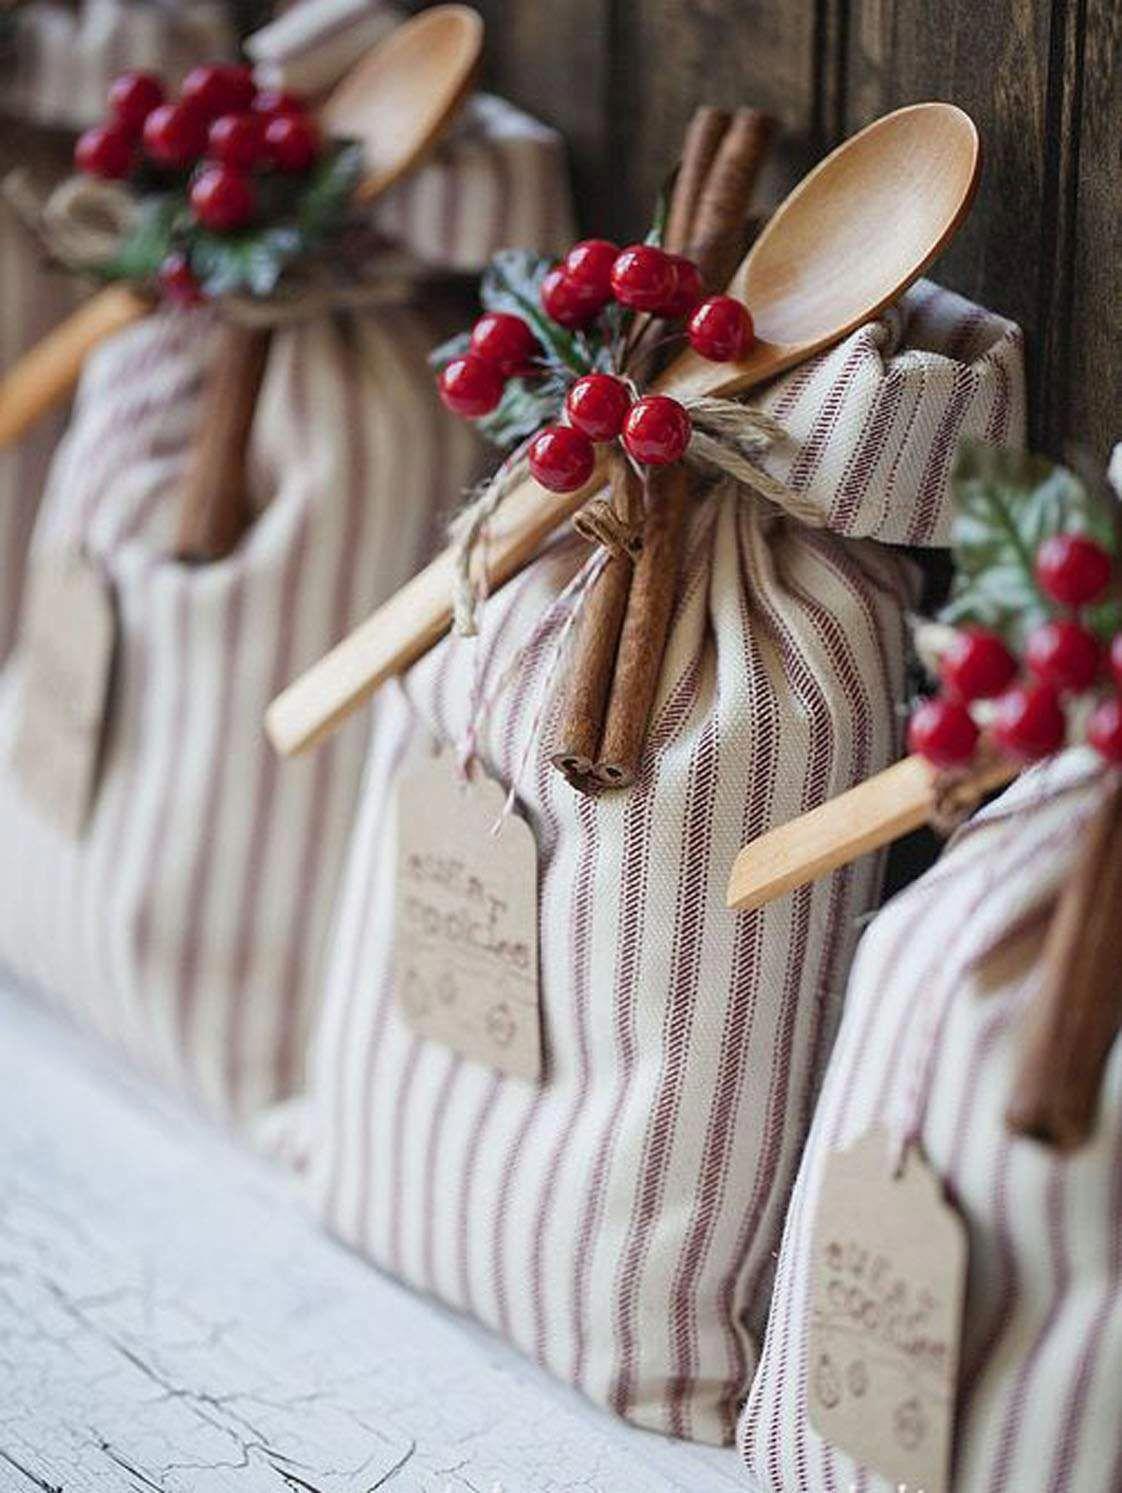 Όμορφες DIY ιδέες για το περιτύλιγμα των δώρων που θα προσφέρετε φέτος τα Χριστούγεννα!